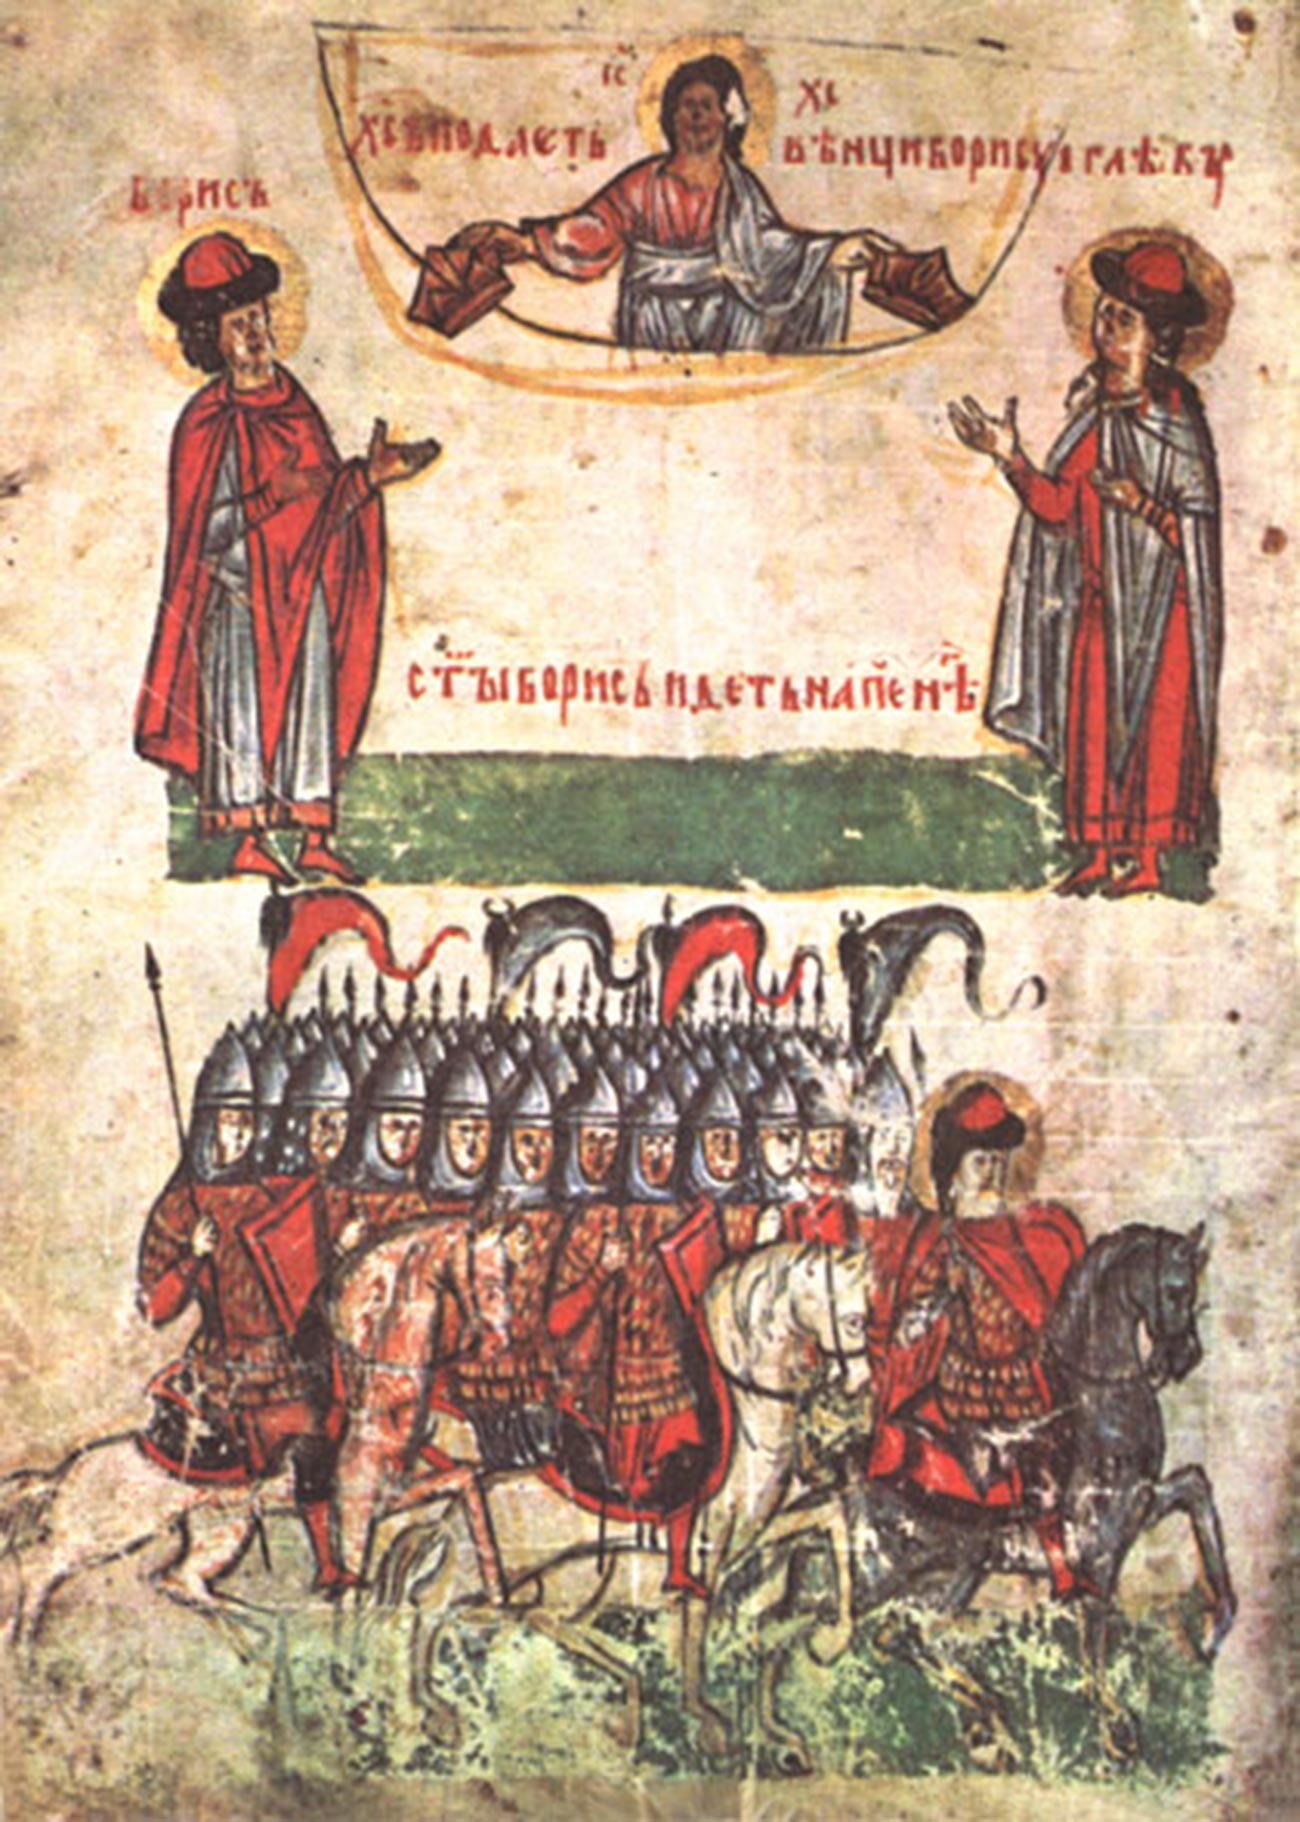 Miniatur abad ke-14 menggambarkan Druzhina yang diperintahkan oleh seorang knyaz.